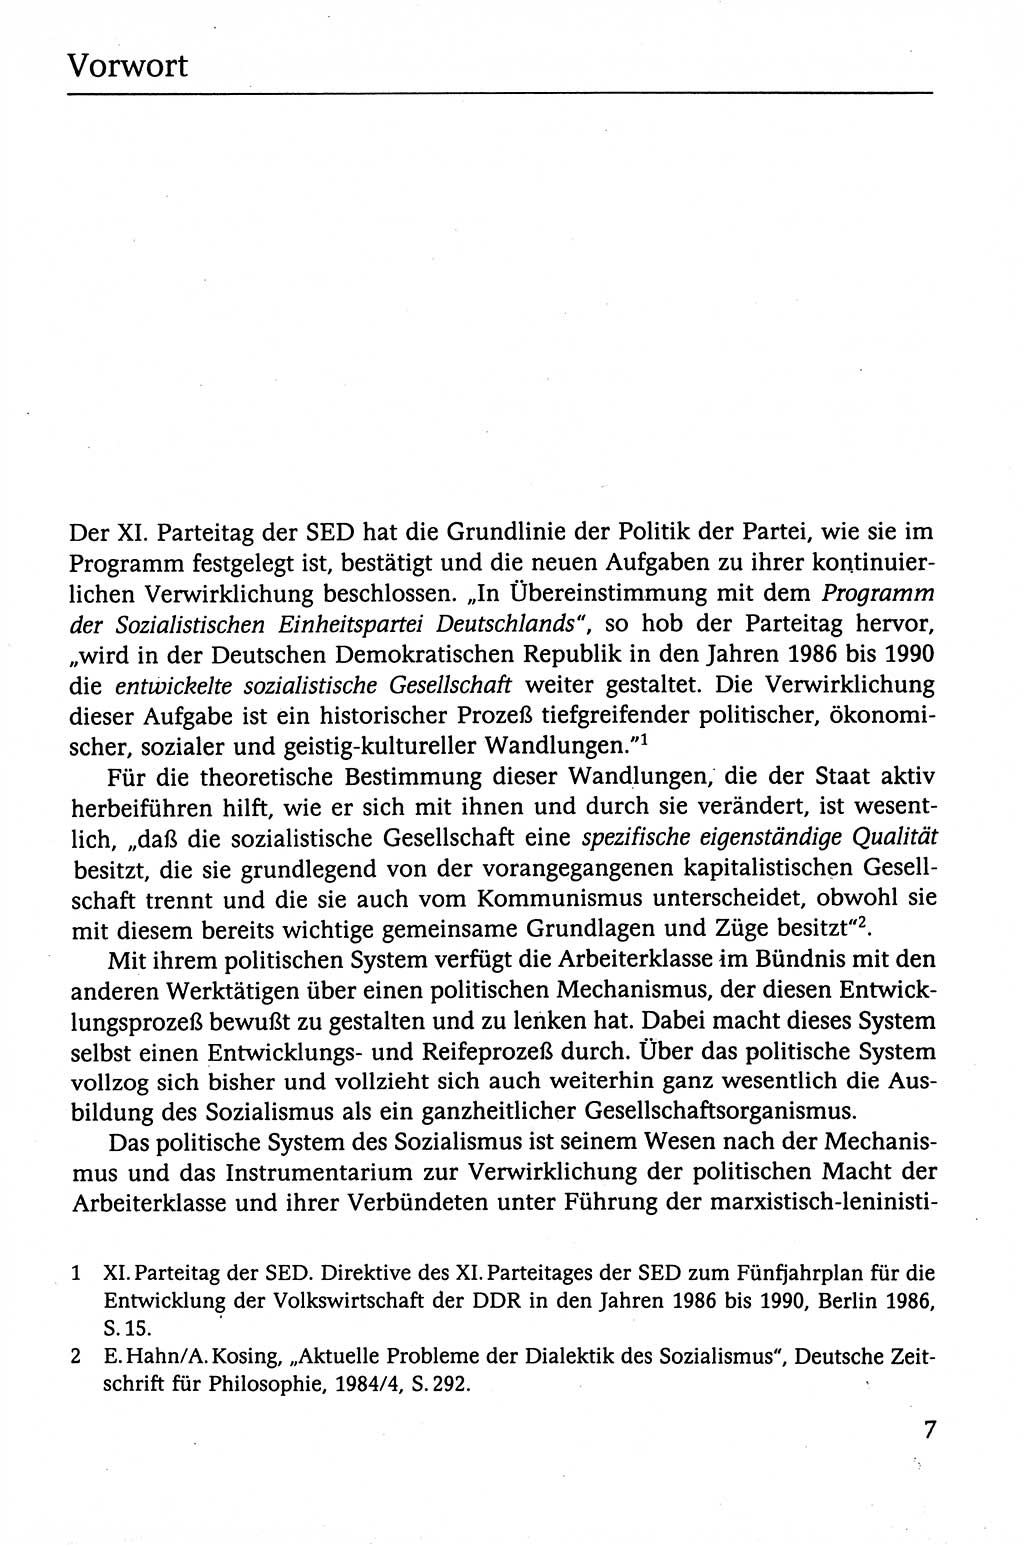 Der Staat im politischen System der DDR (Deutsche Demokratische Republik) 1986, Seite 7 (St. pol. Sys. DDR 1986, S. 7)